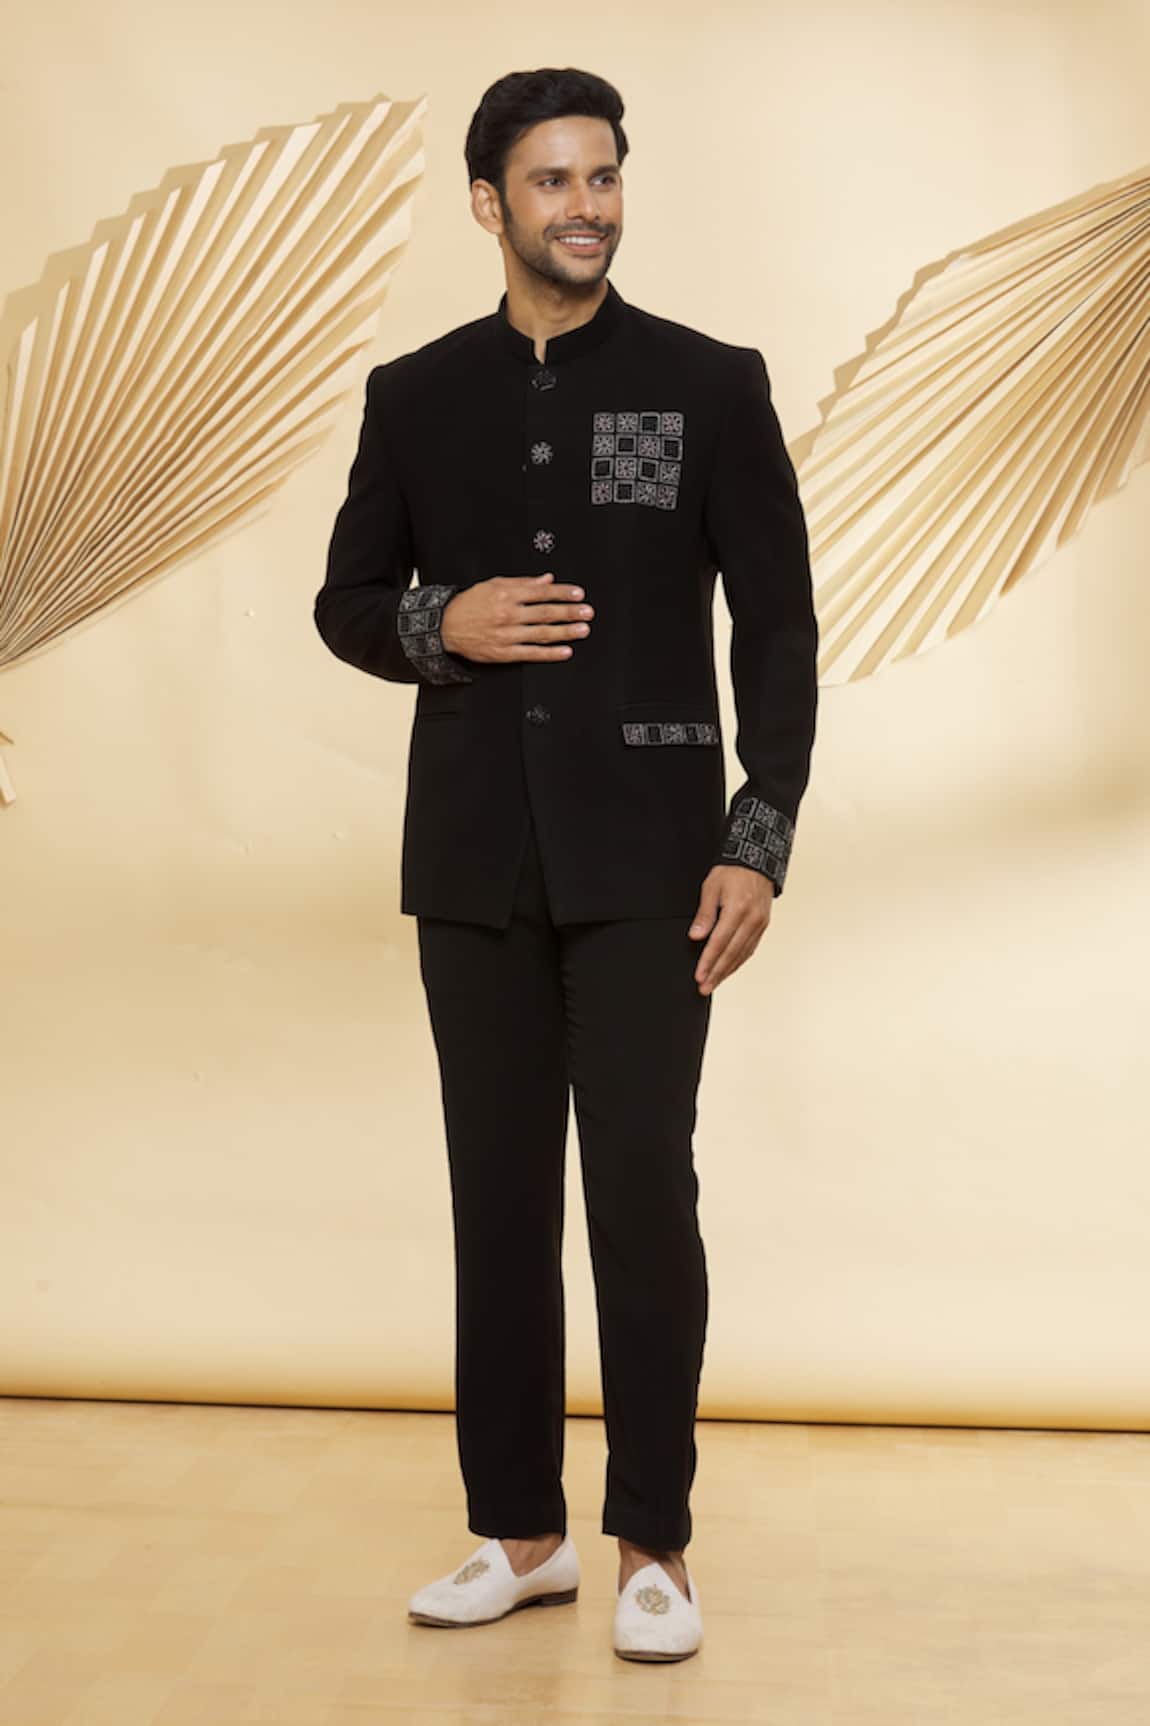 Jade Black Plain-Solid Premium Terry-Reyon Bandhgala/Jodhpuri Suits for Men.